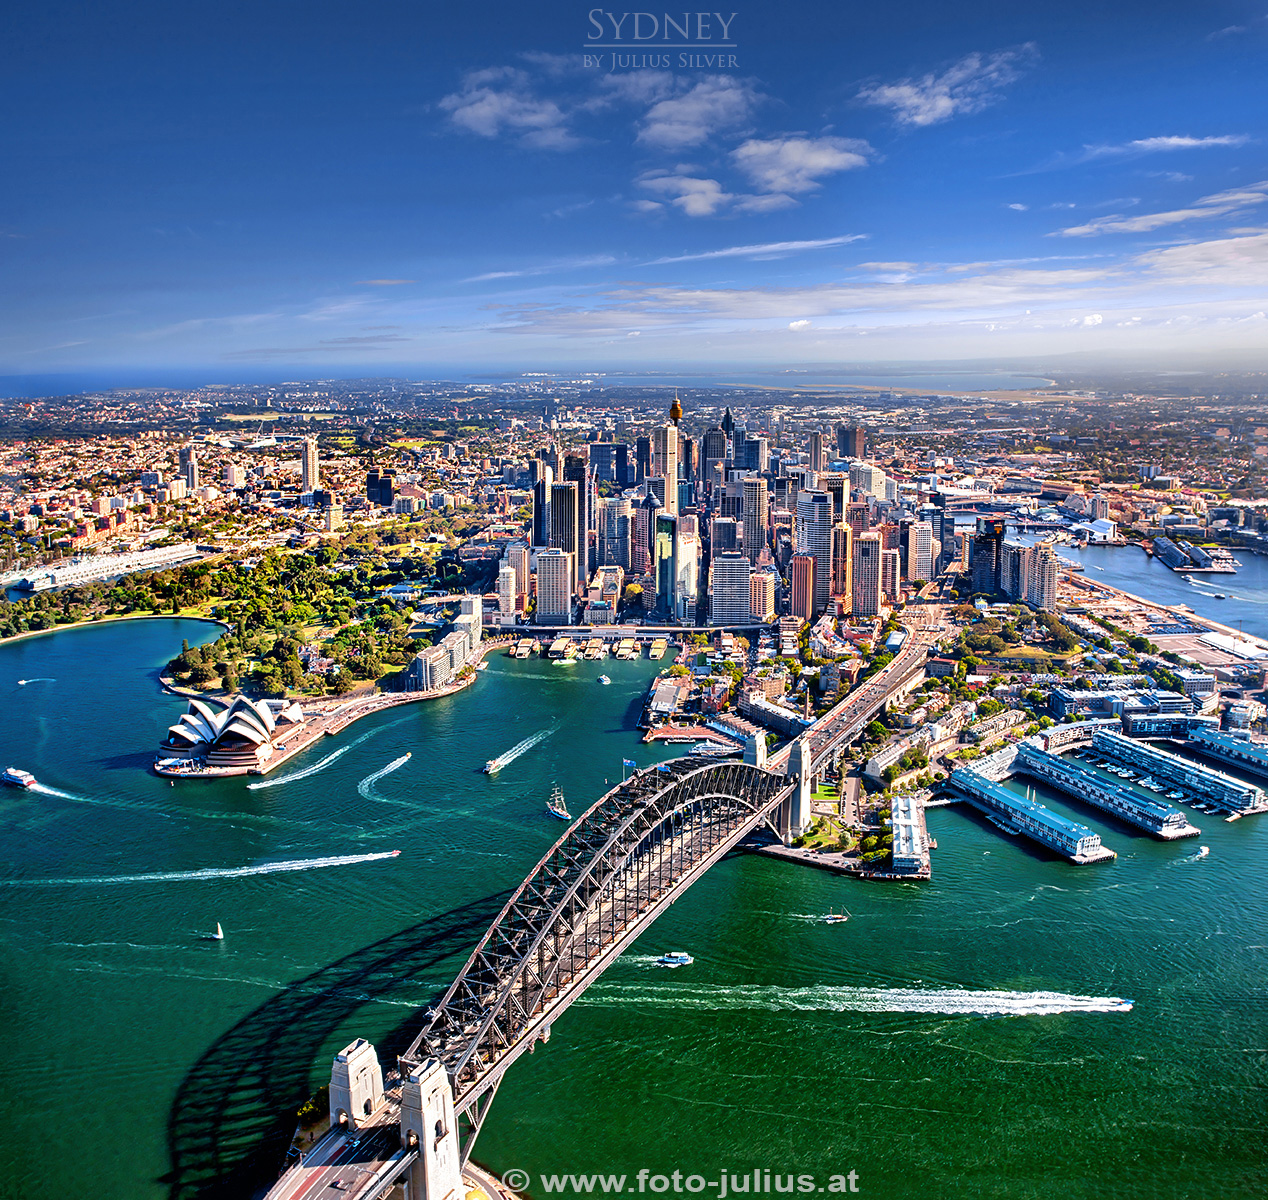 Australia_004a_Sydney.jpg, 1,0MB